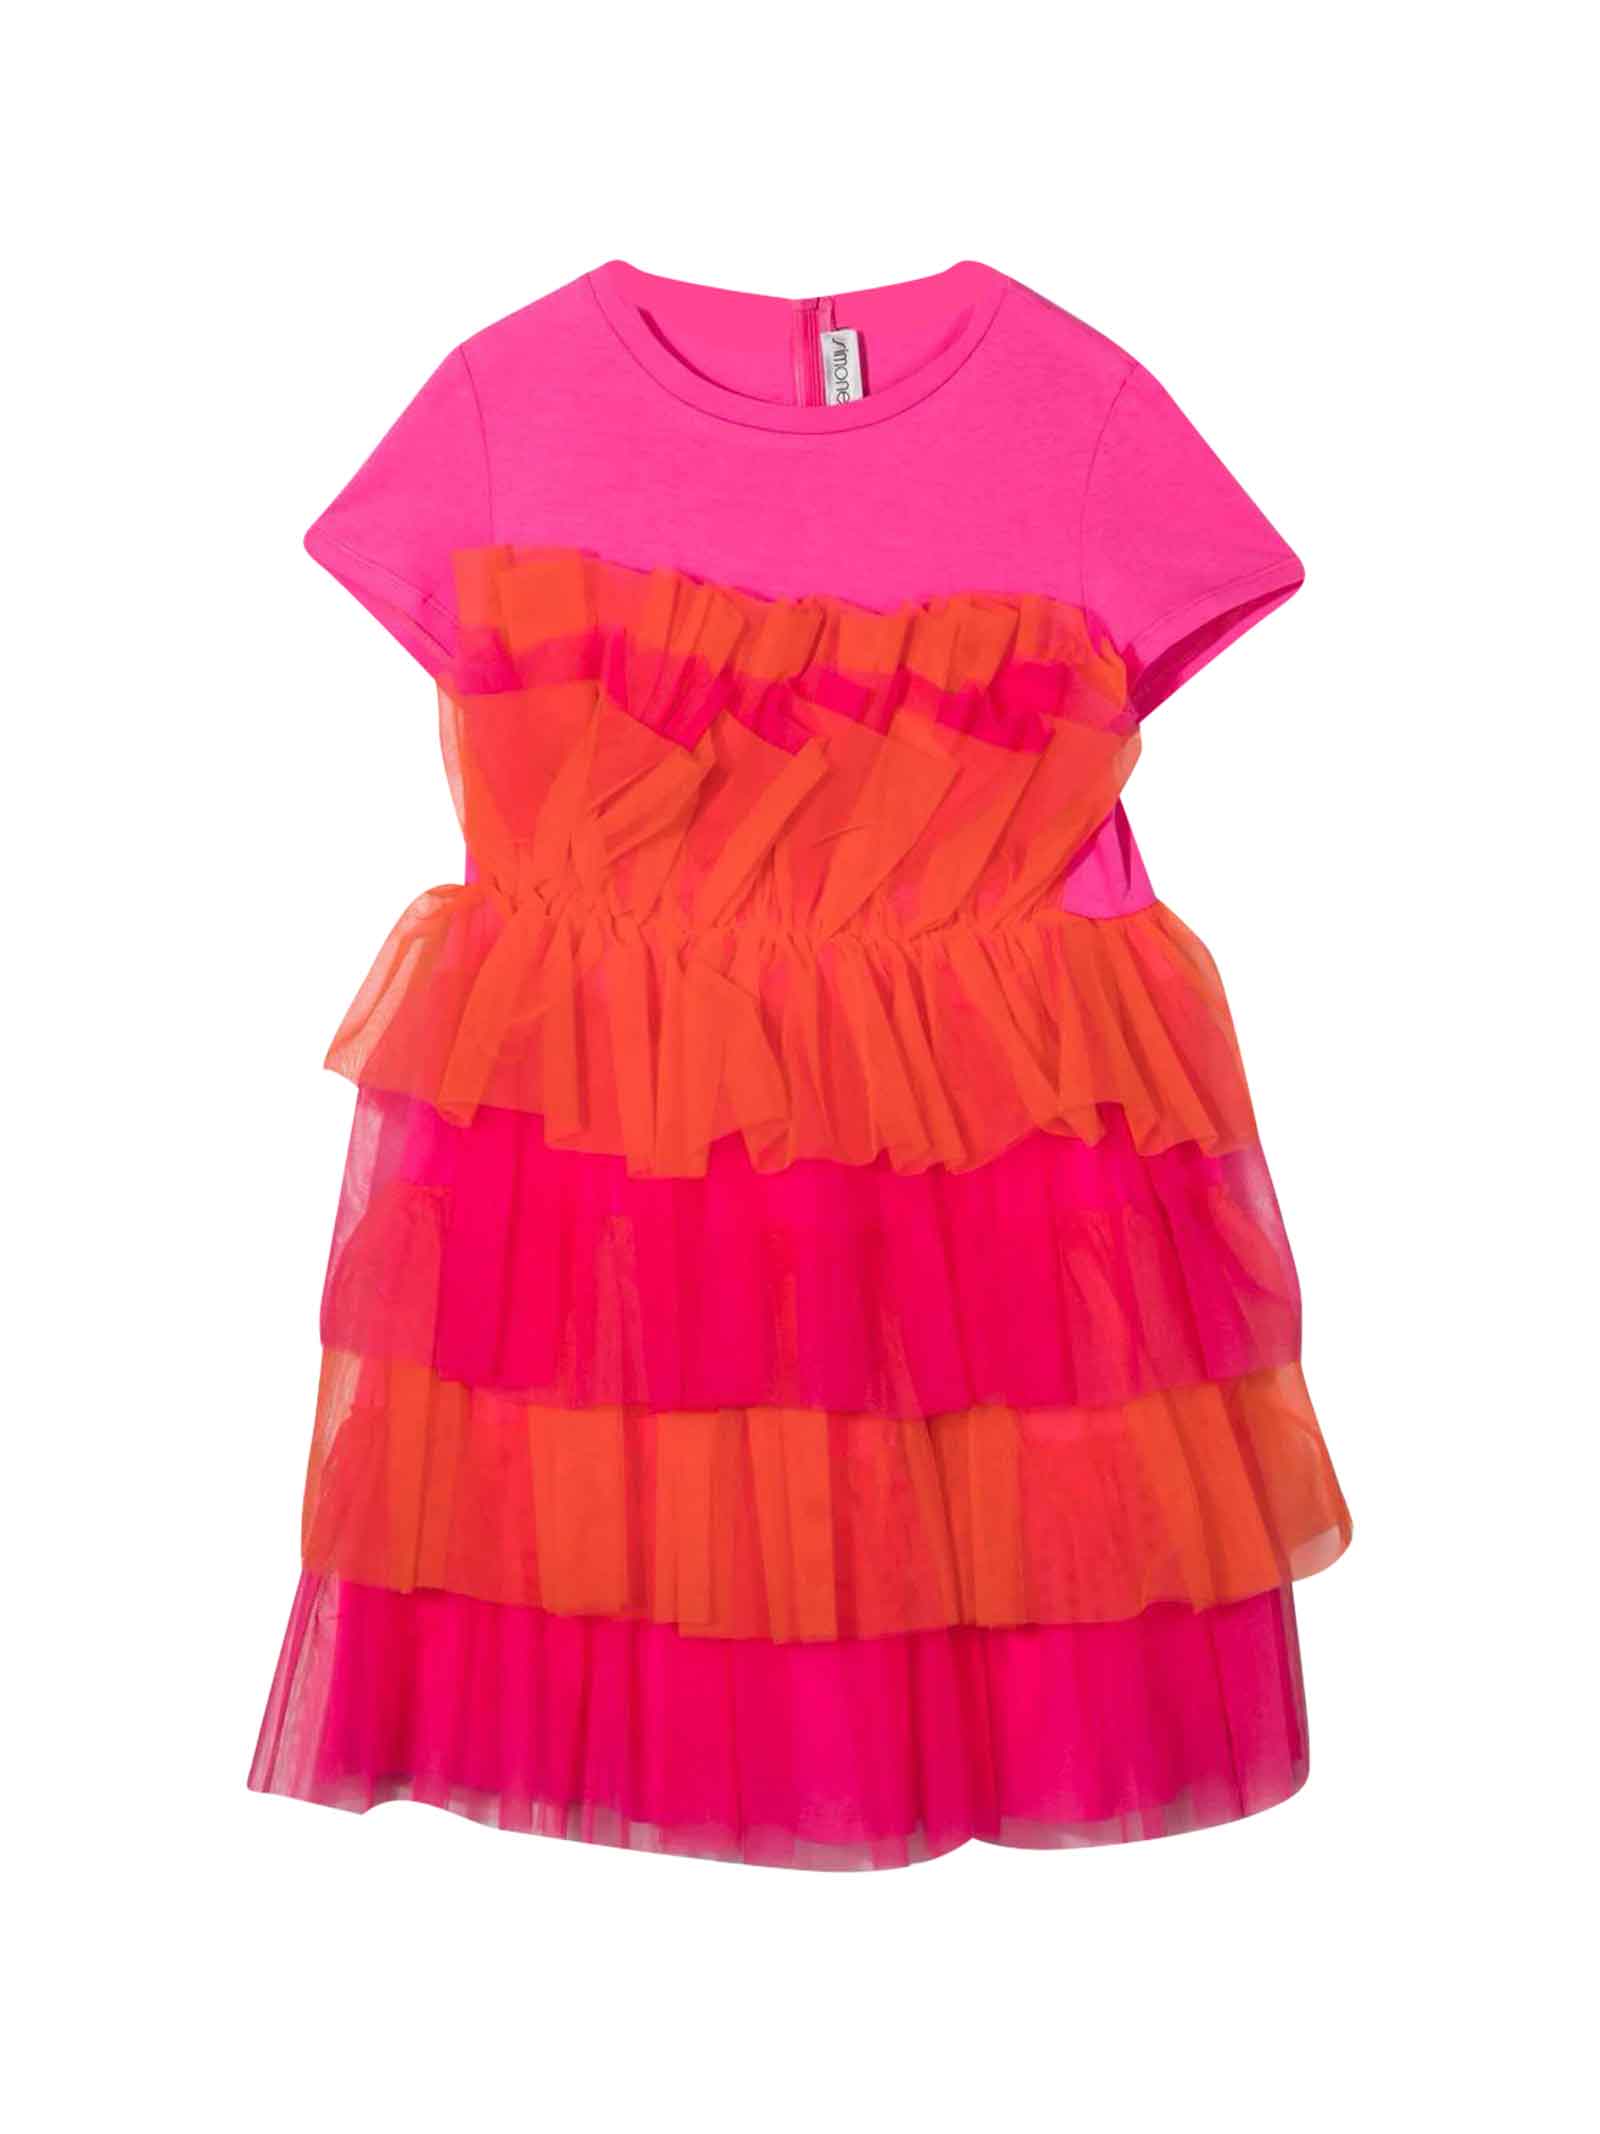 Simonetta Pink Dress Teen Girl Kids